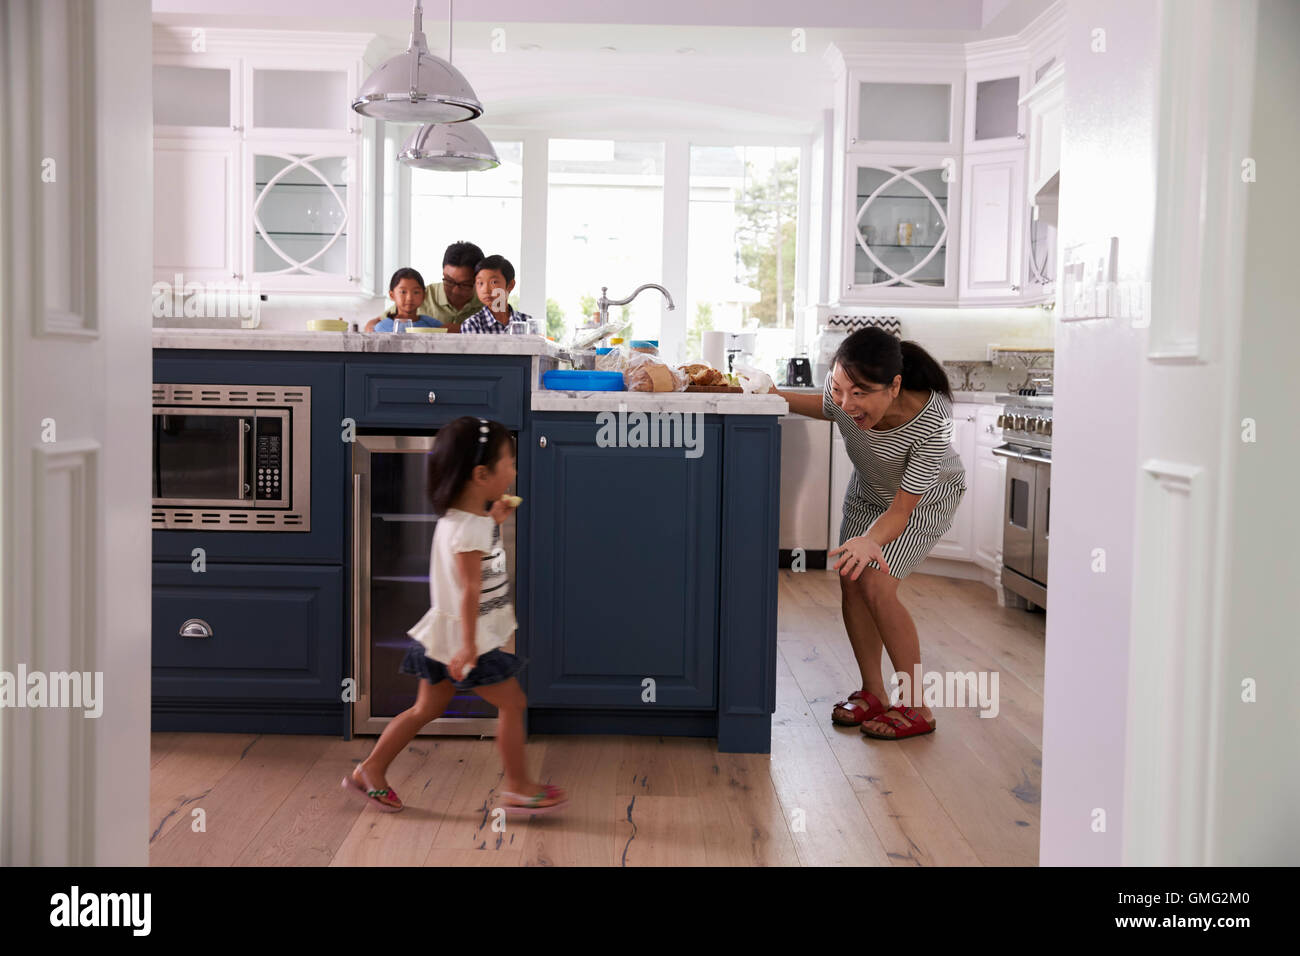 Los padres preparan la comida mientras los niños juegan en la cocina Foto de stock